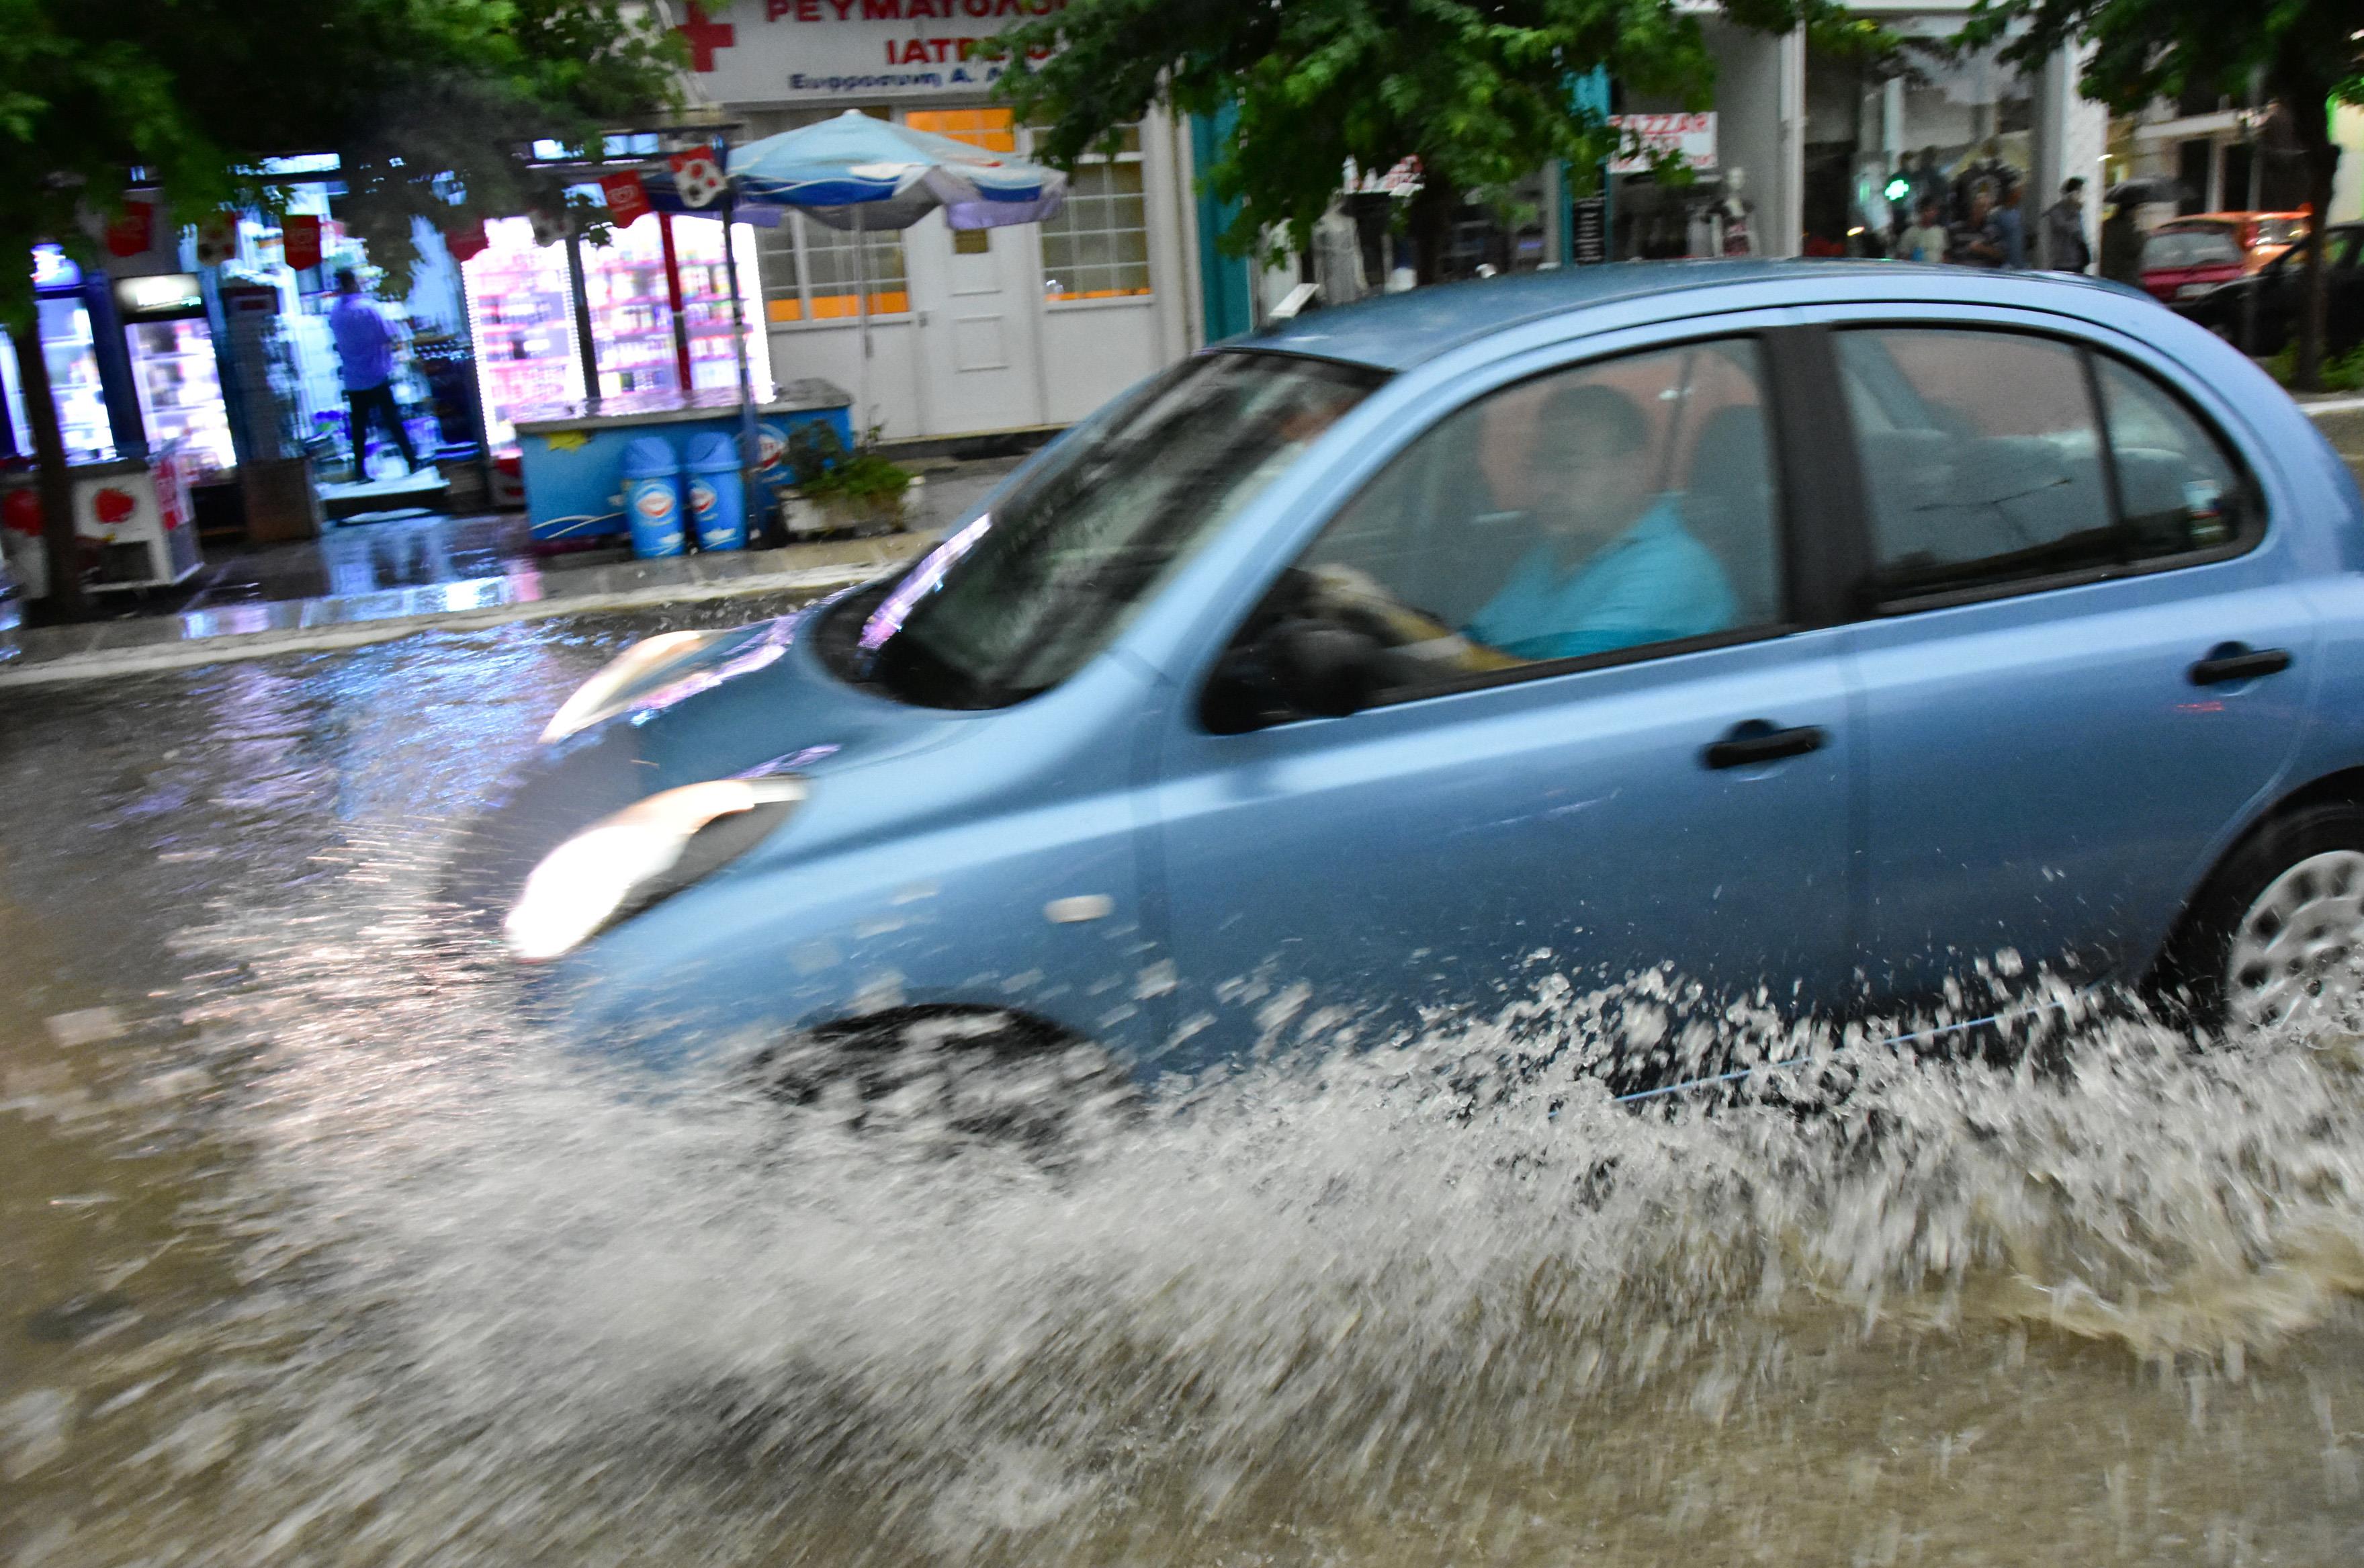 Σε κατάσταση έκτακτης ανάγκης η Μεγαλόπολη από τη σφοδρή βροχόπτωση